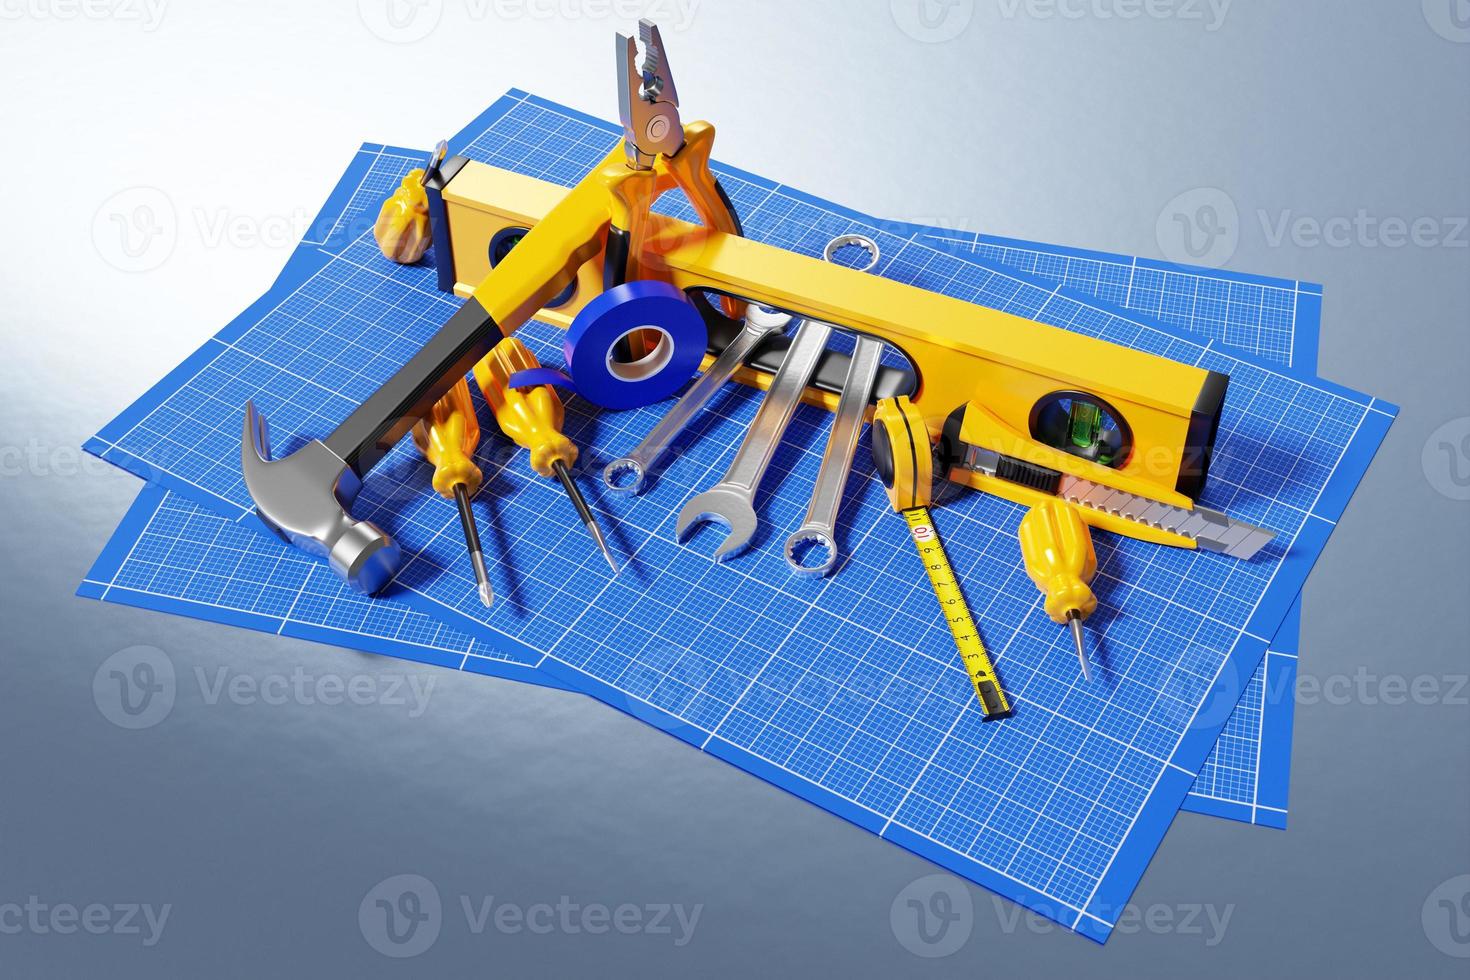 3d illustratie van een metalen hamer, schroevendraaiers, tangen, niveau, meetlint, elektrische tape, snijder met geel handvat op millimeterpapier. 3D-weergave van een handgereedschap voor reparatie en installatie foto